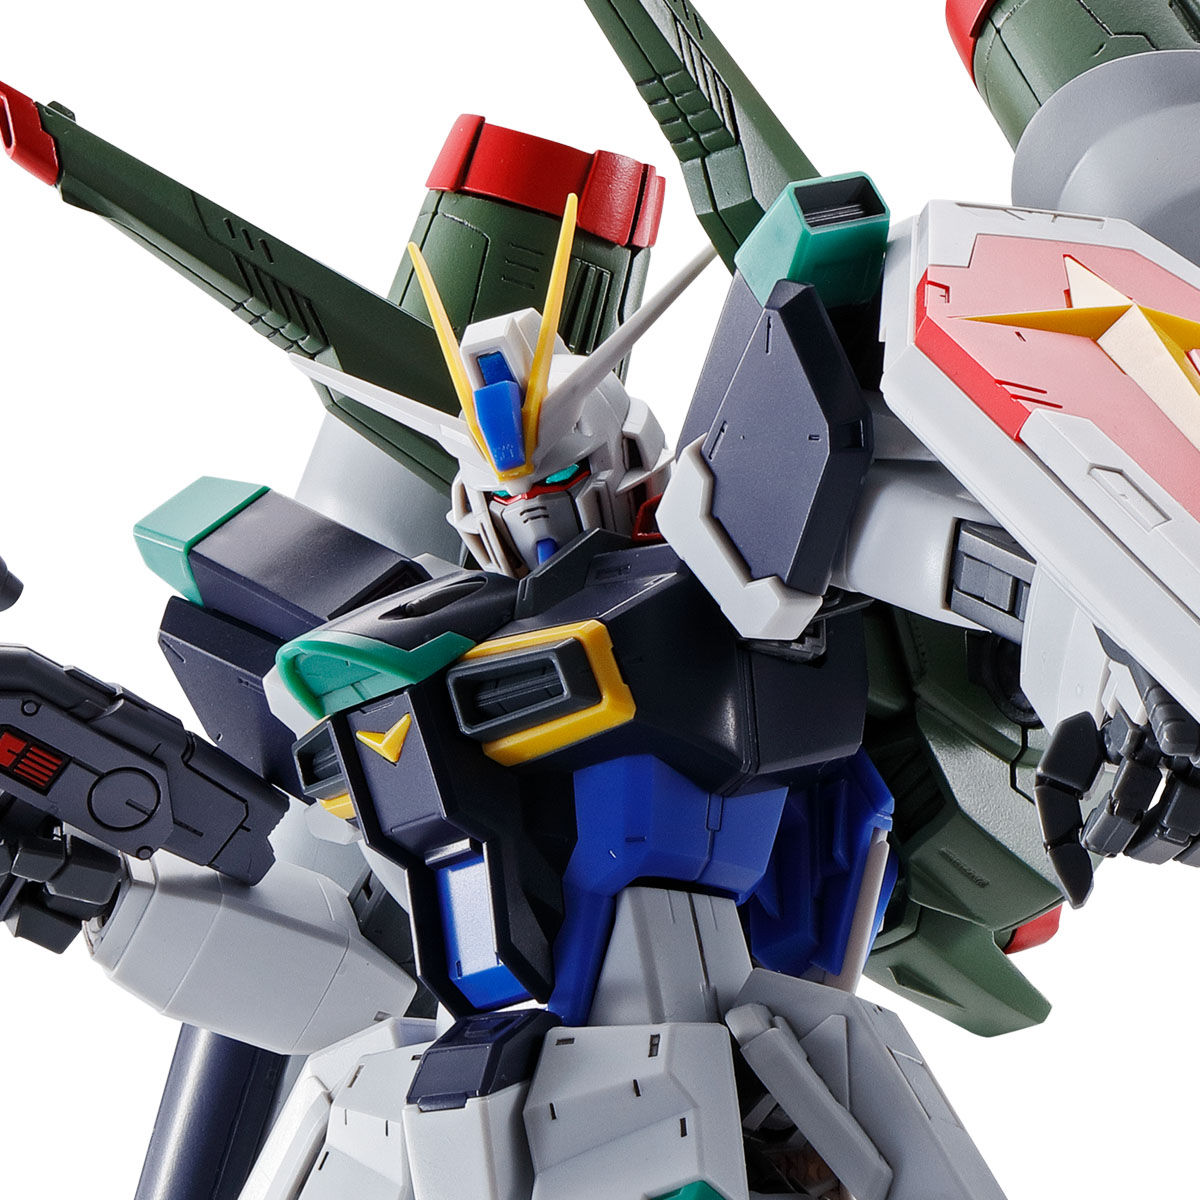 MG 1/100 ZGMF-X56S/γ Blast Impulse Gundam